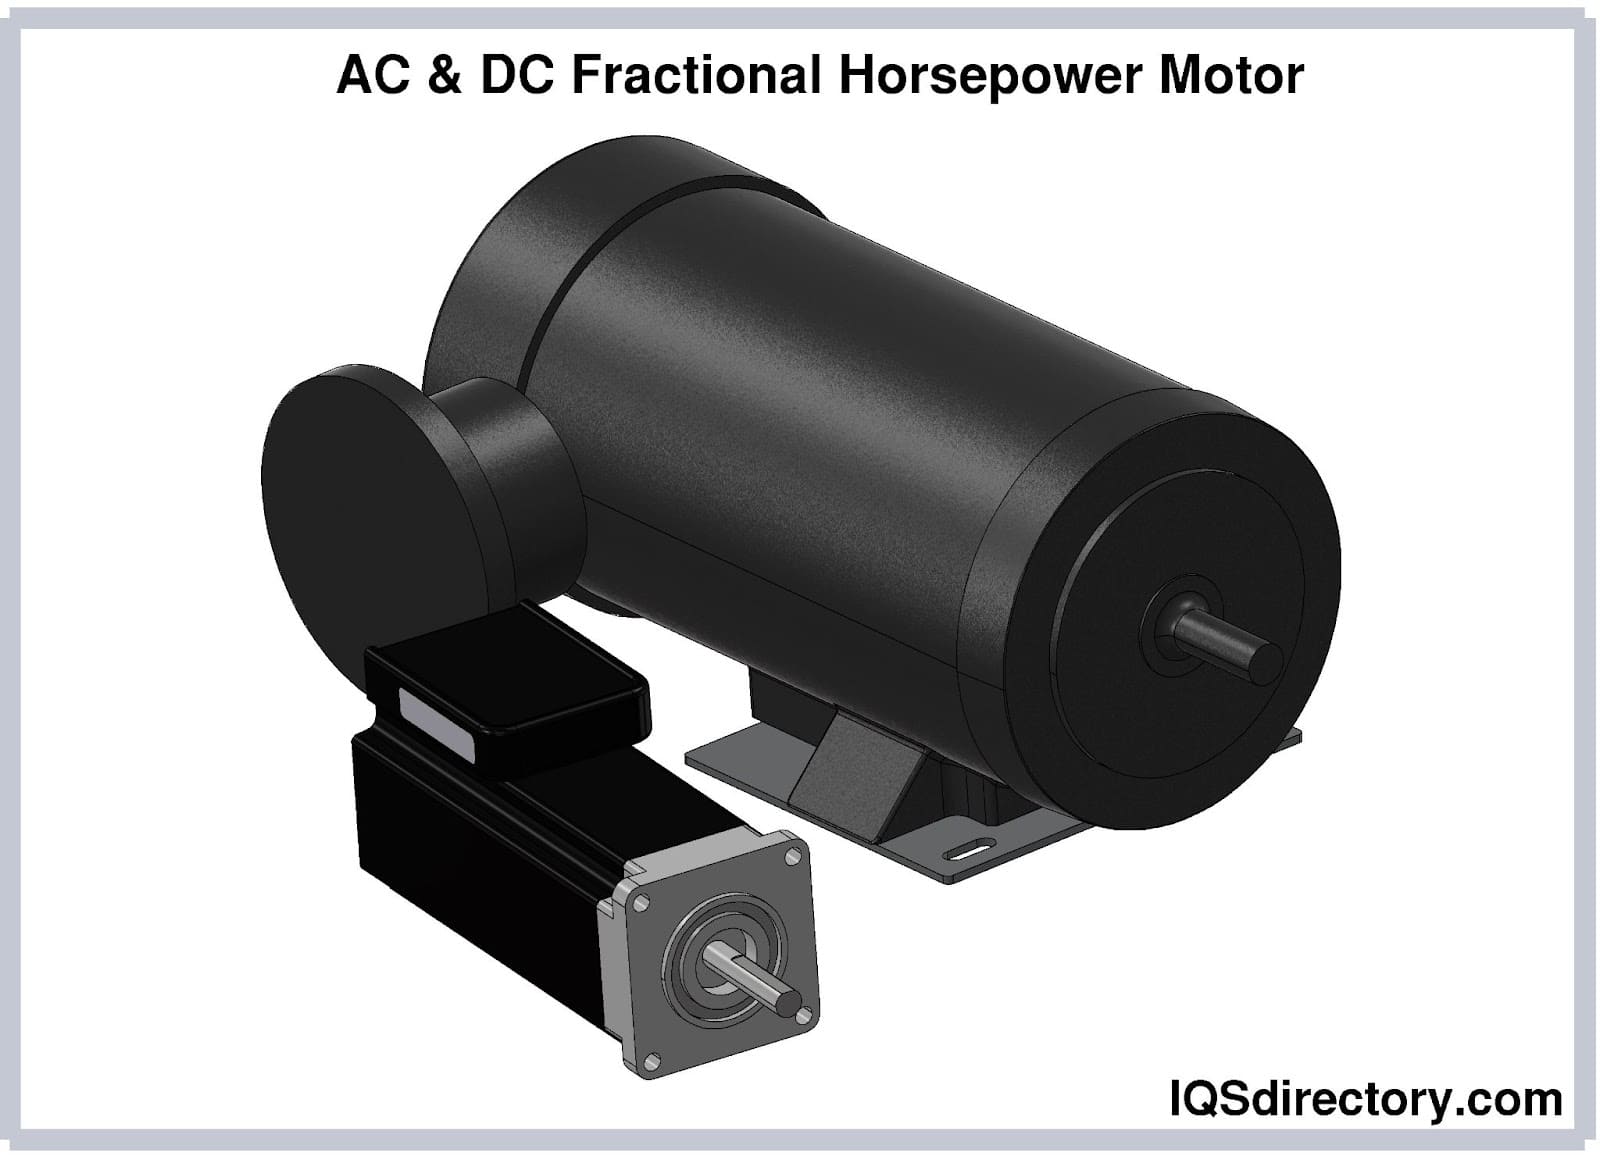 AC & DC Fractional Horsepower Motor